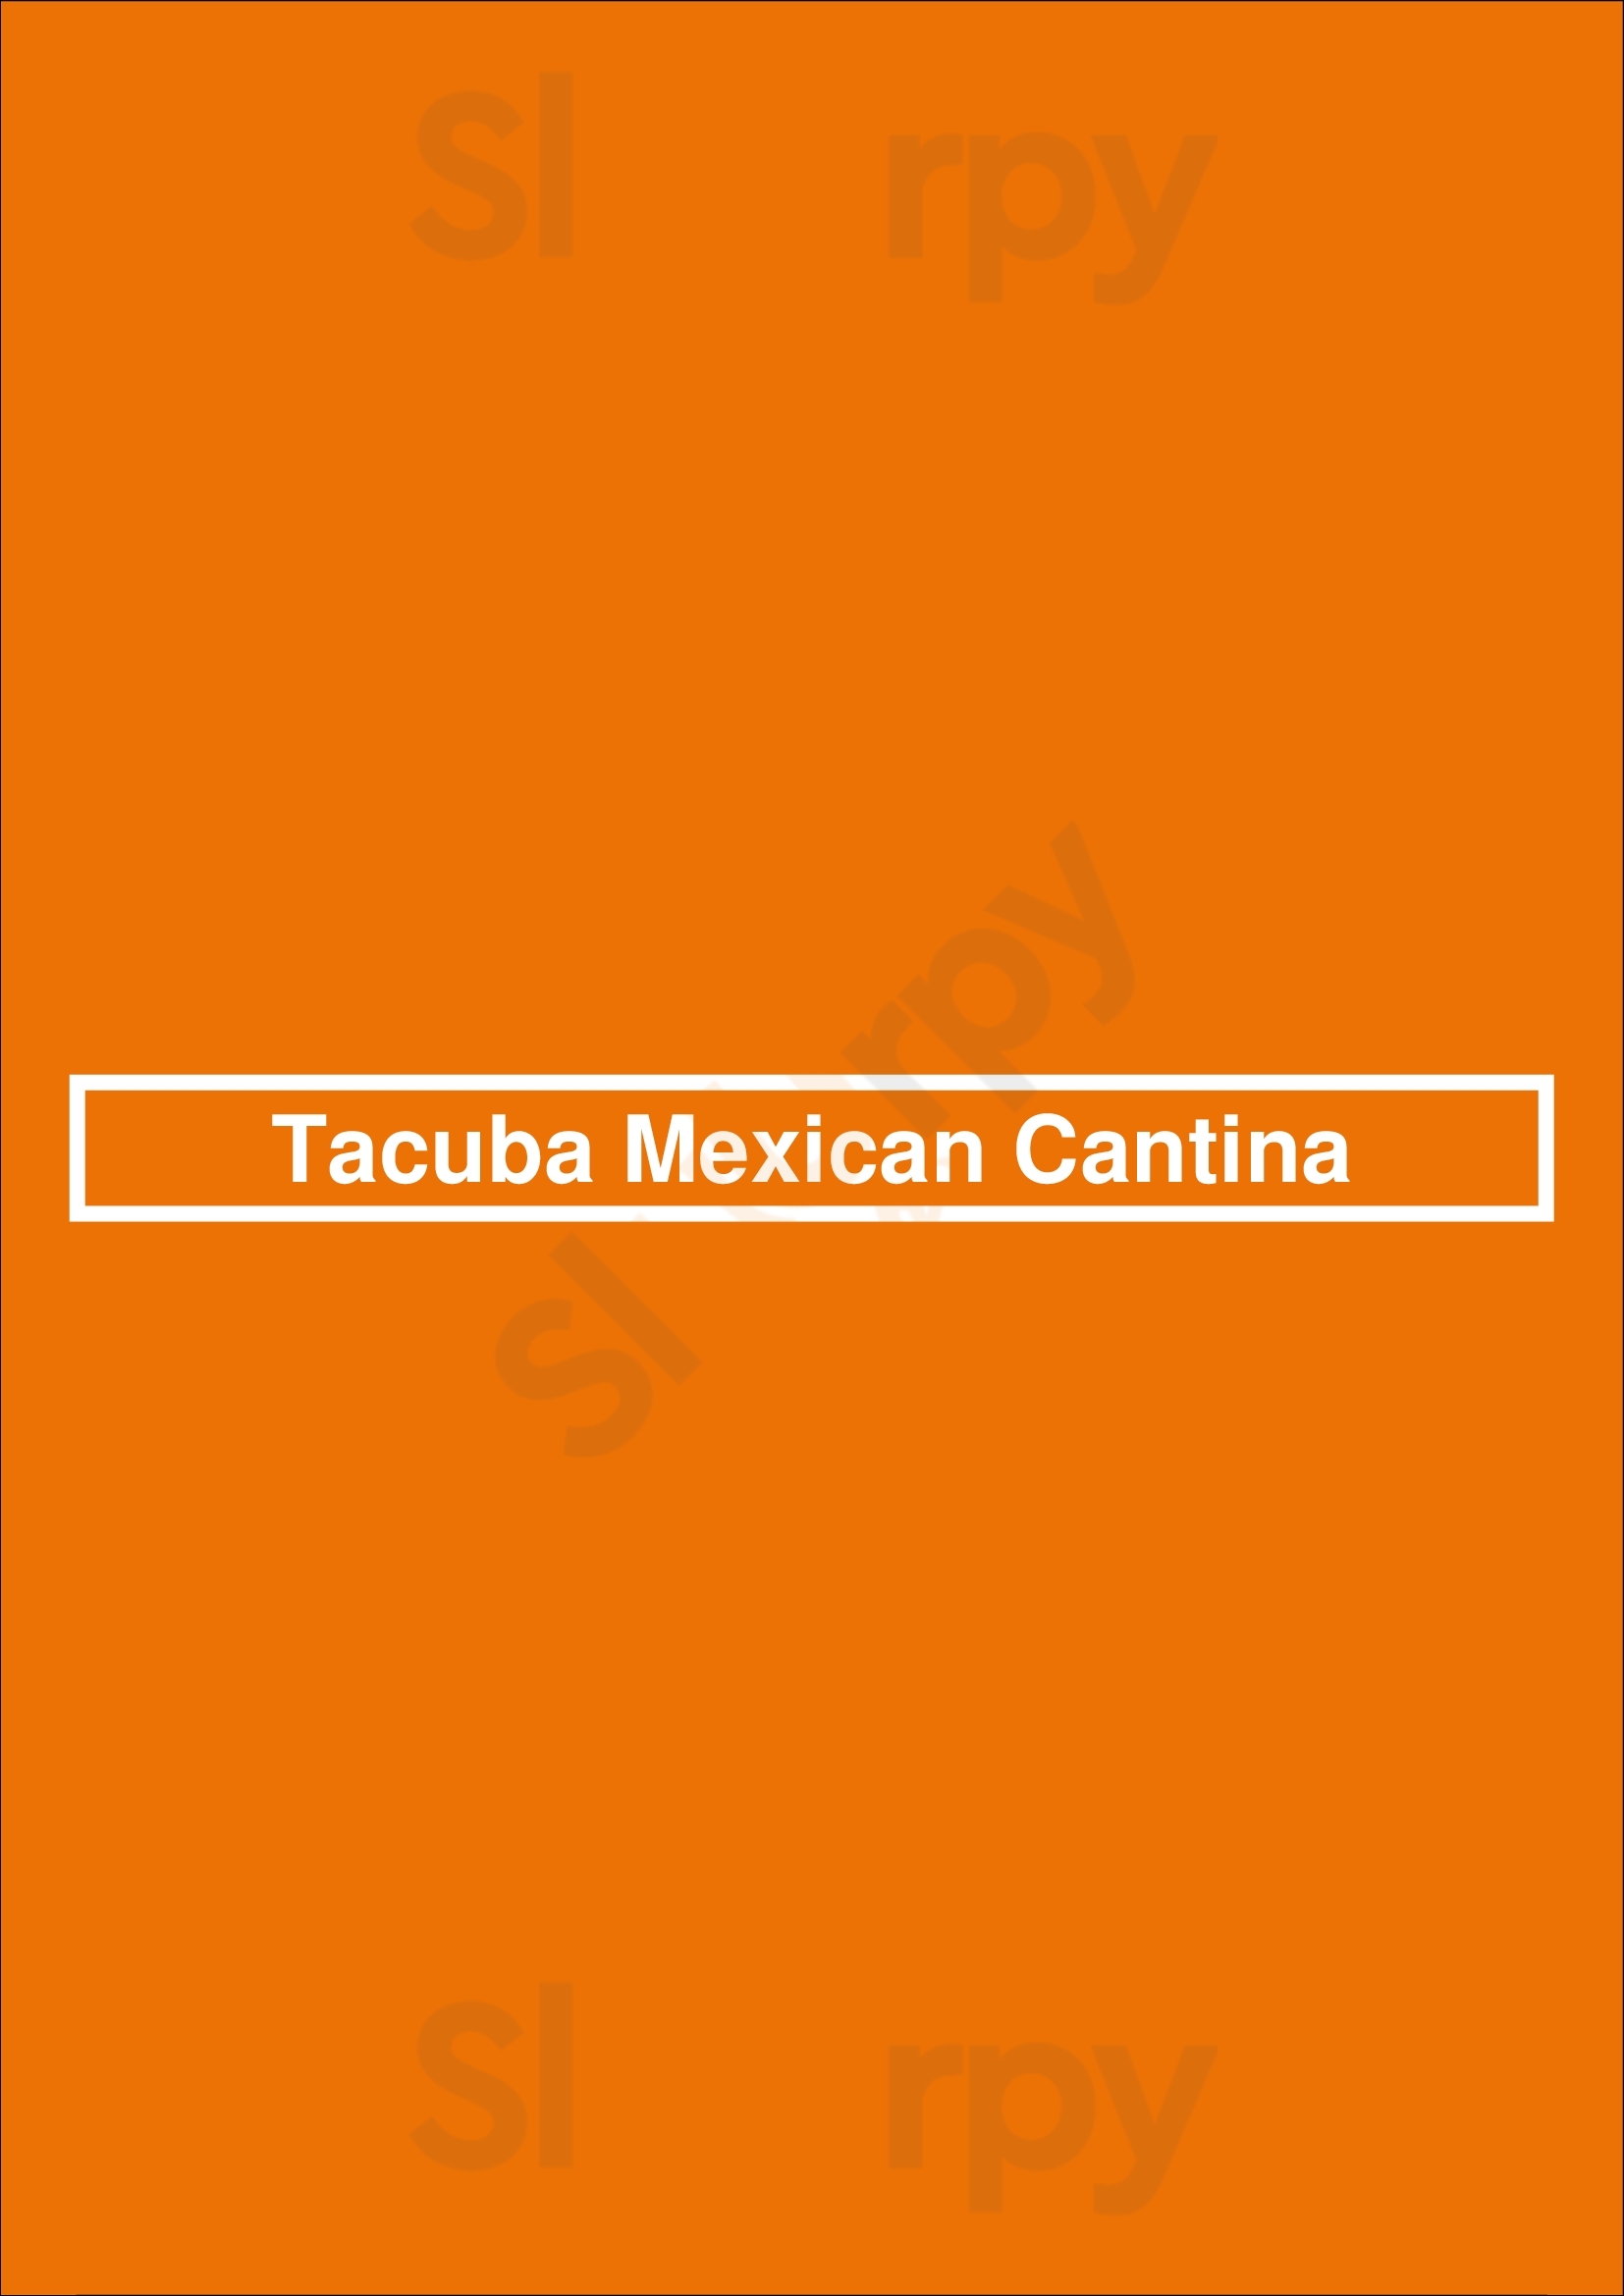 Tacuba Cantina Mexicana Astoria Menu - 1